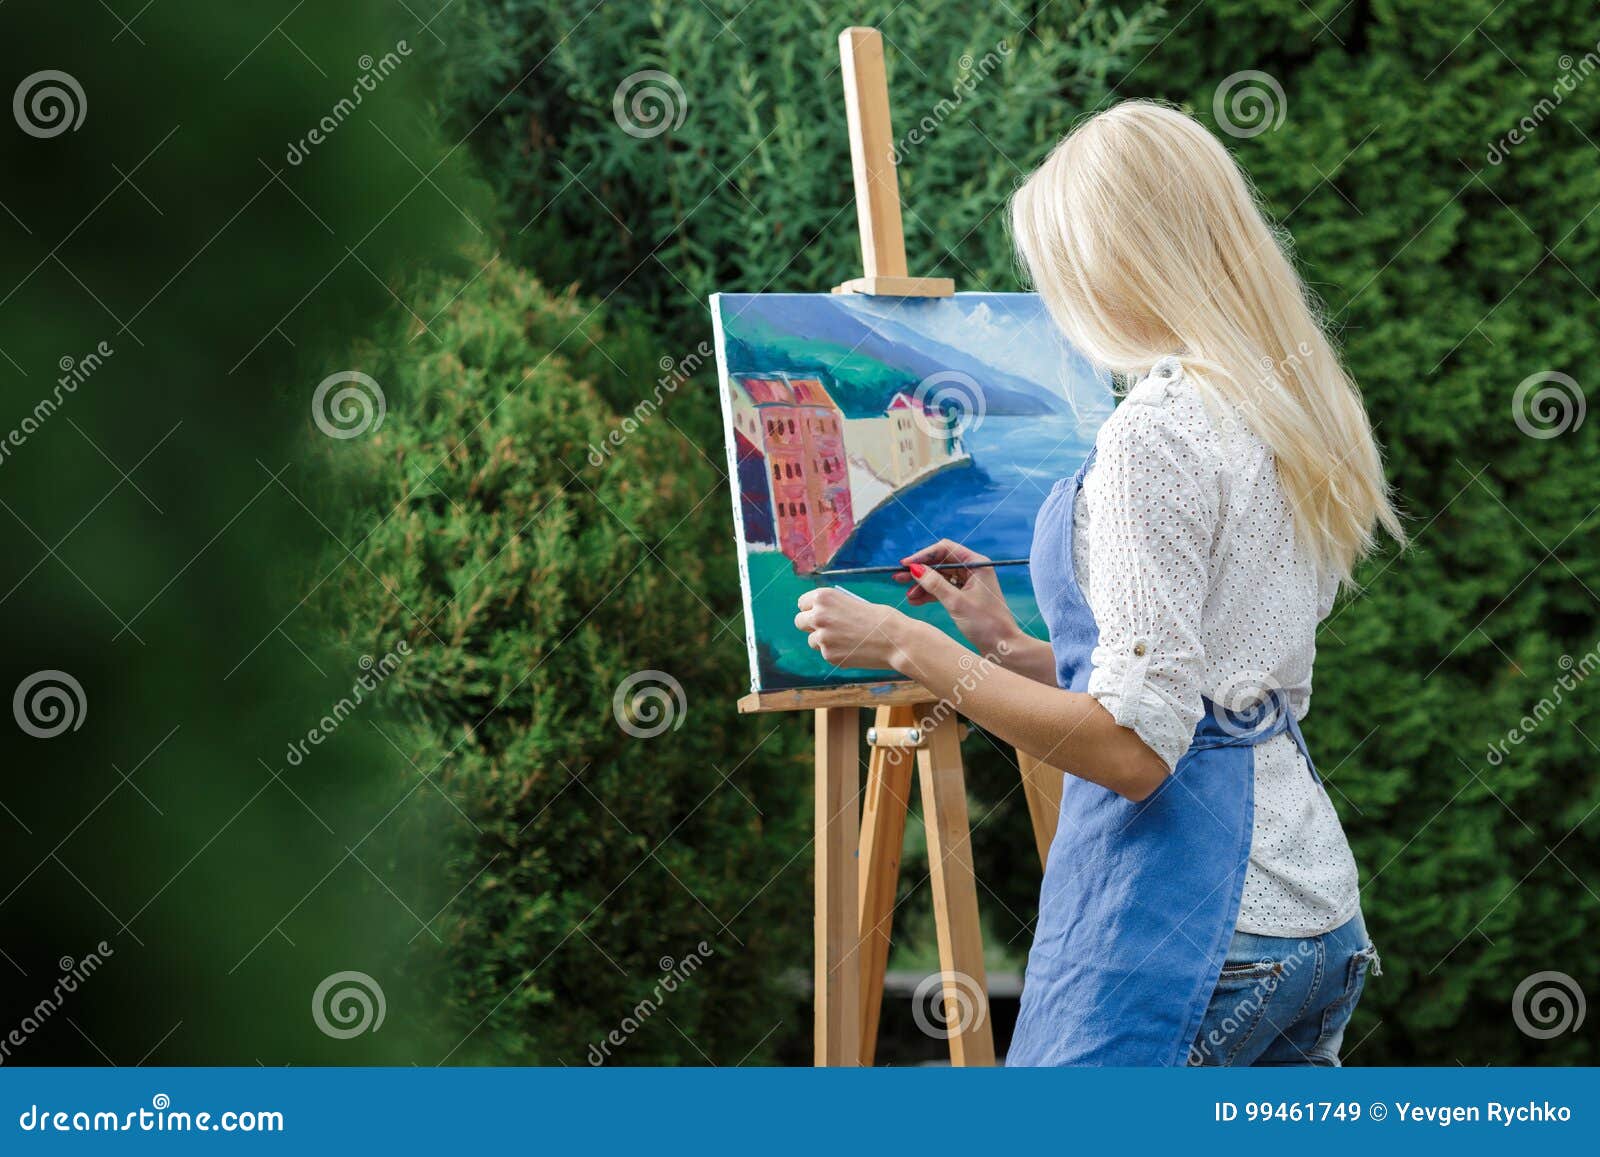 Слева от окна мольберт найдите слово. Девочка с мольбертом. Картина на мольберте. Блондинка с мольбертом. Девушка с мольбертом в руках.